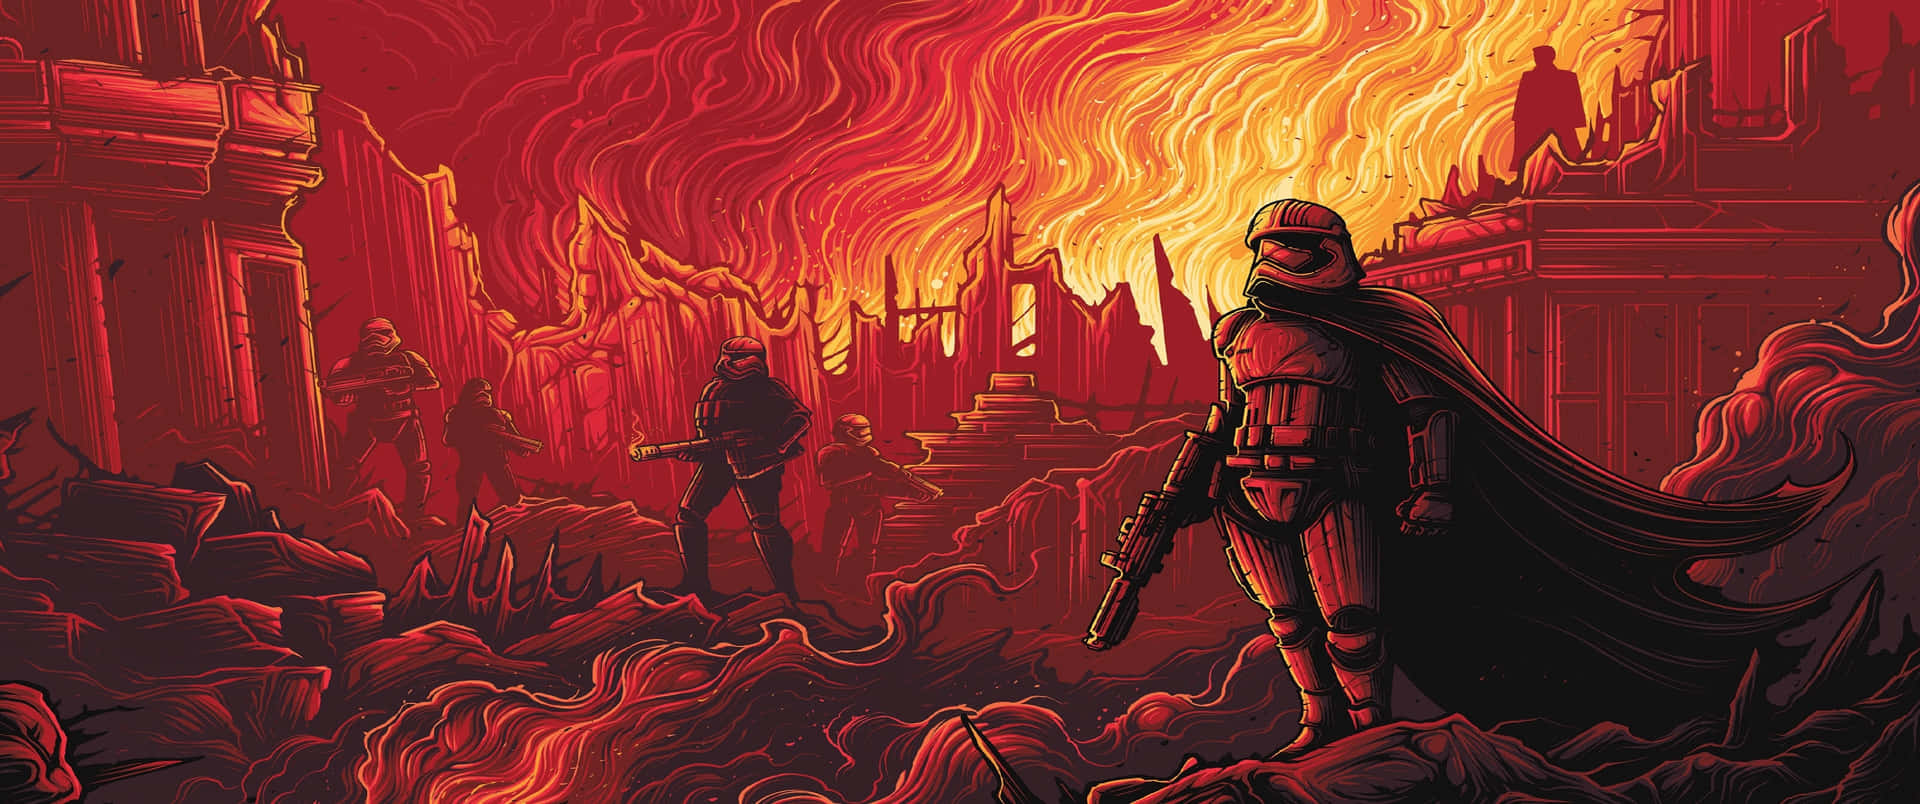 Star Wars Red Battle Scene Wallpaper